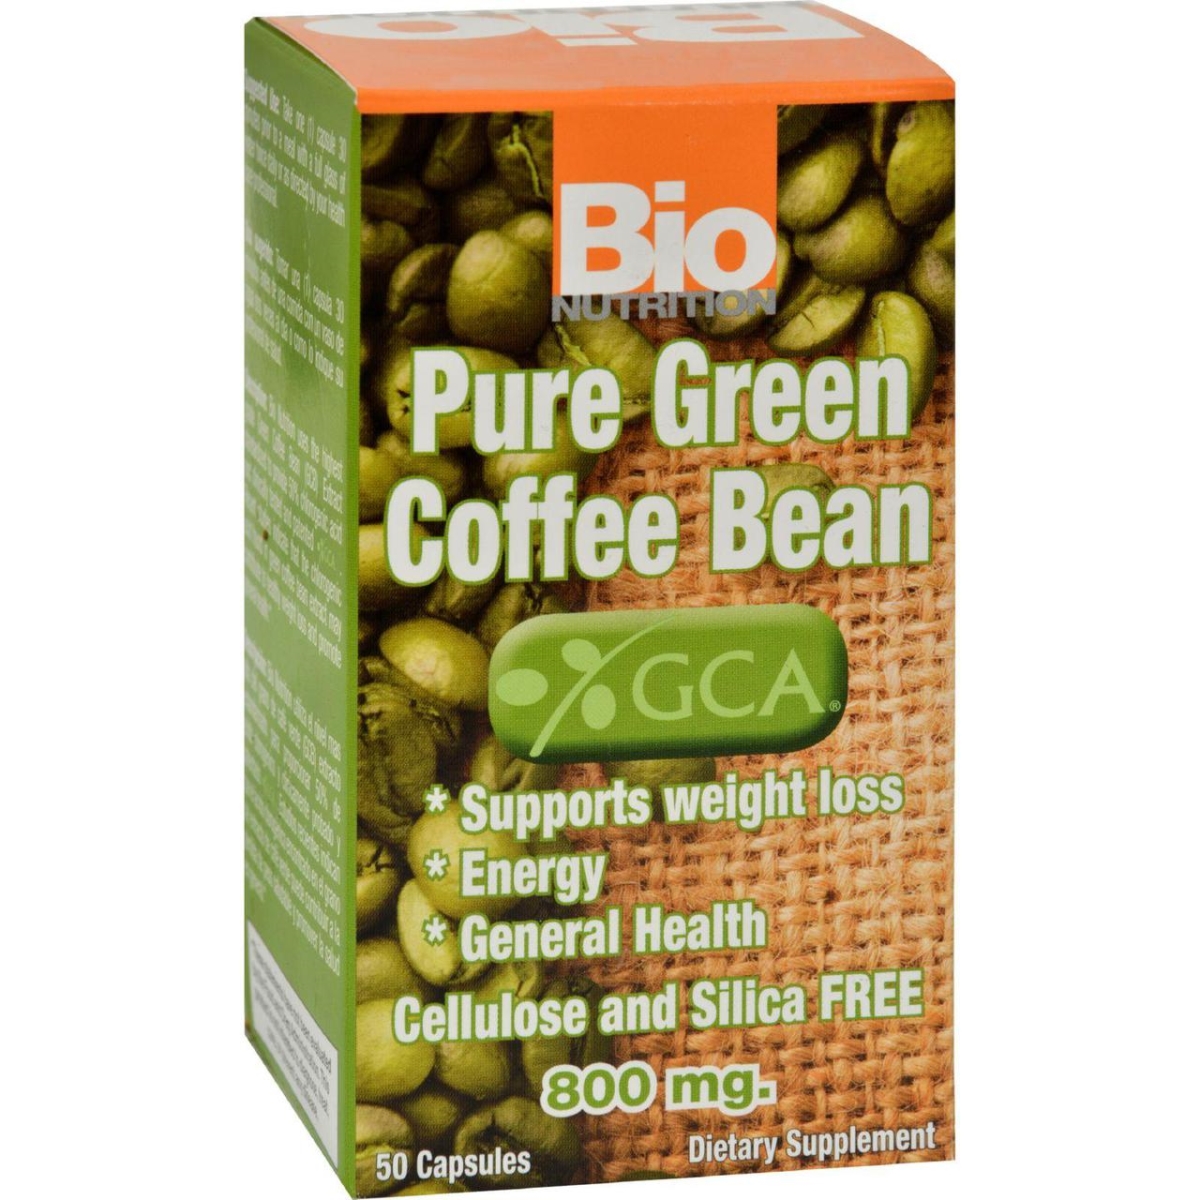 Bio Nutrition Hg1143668 Pure Green Coffee Bean - 50 Gelcaps